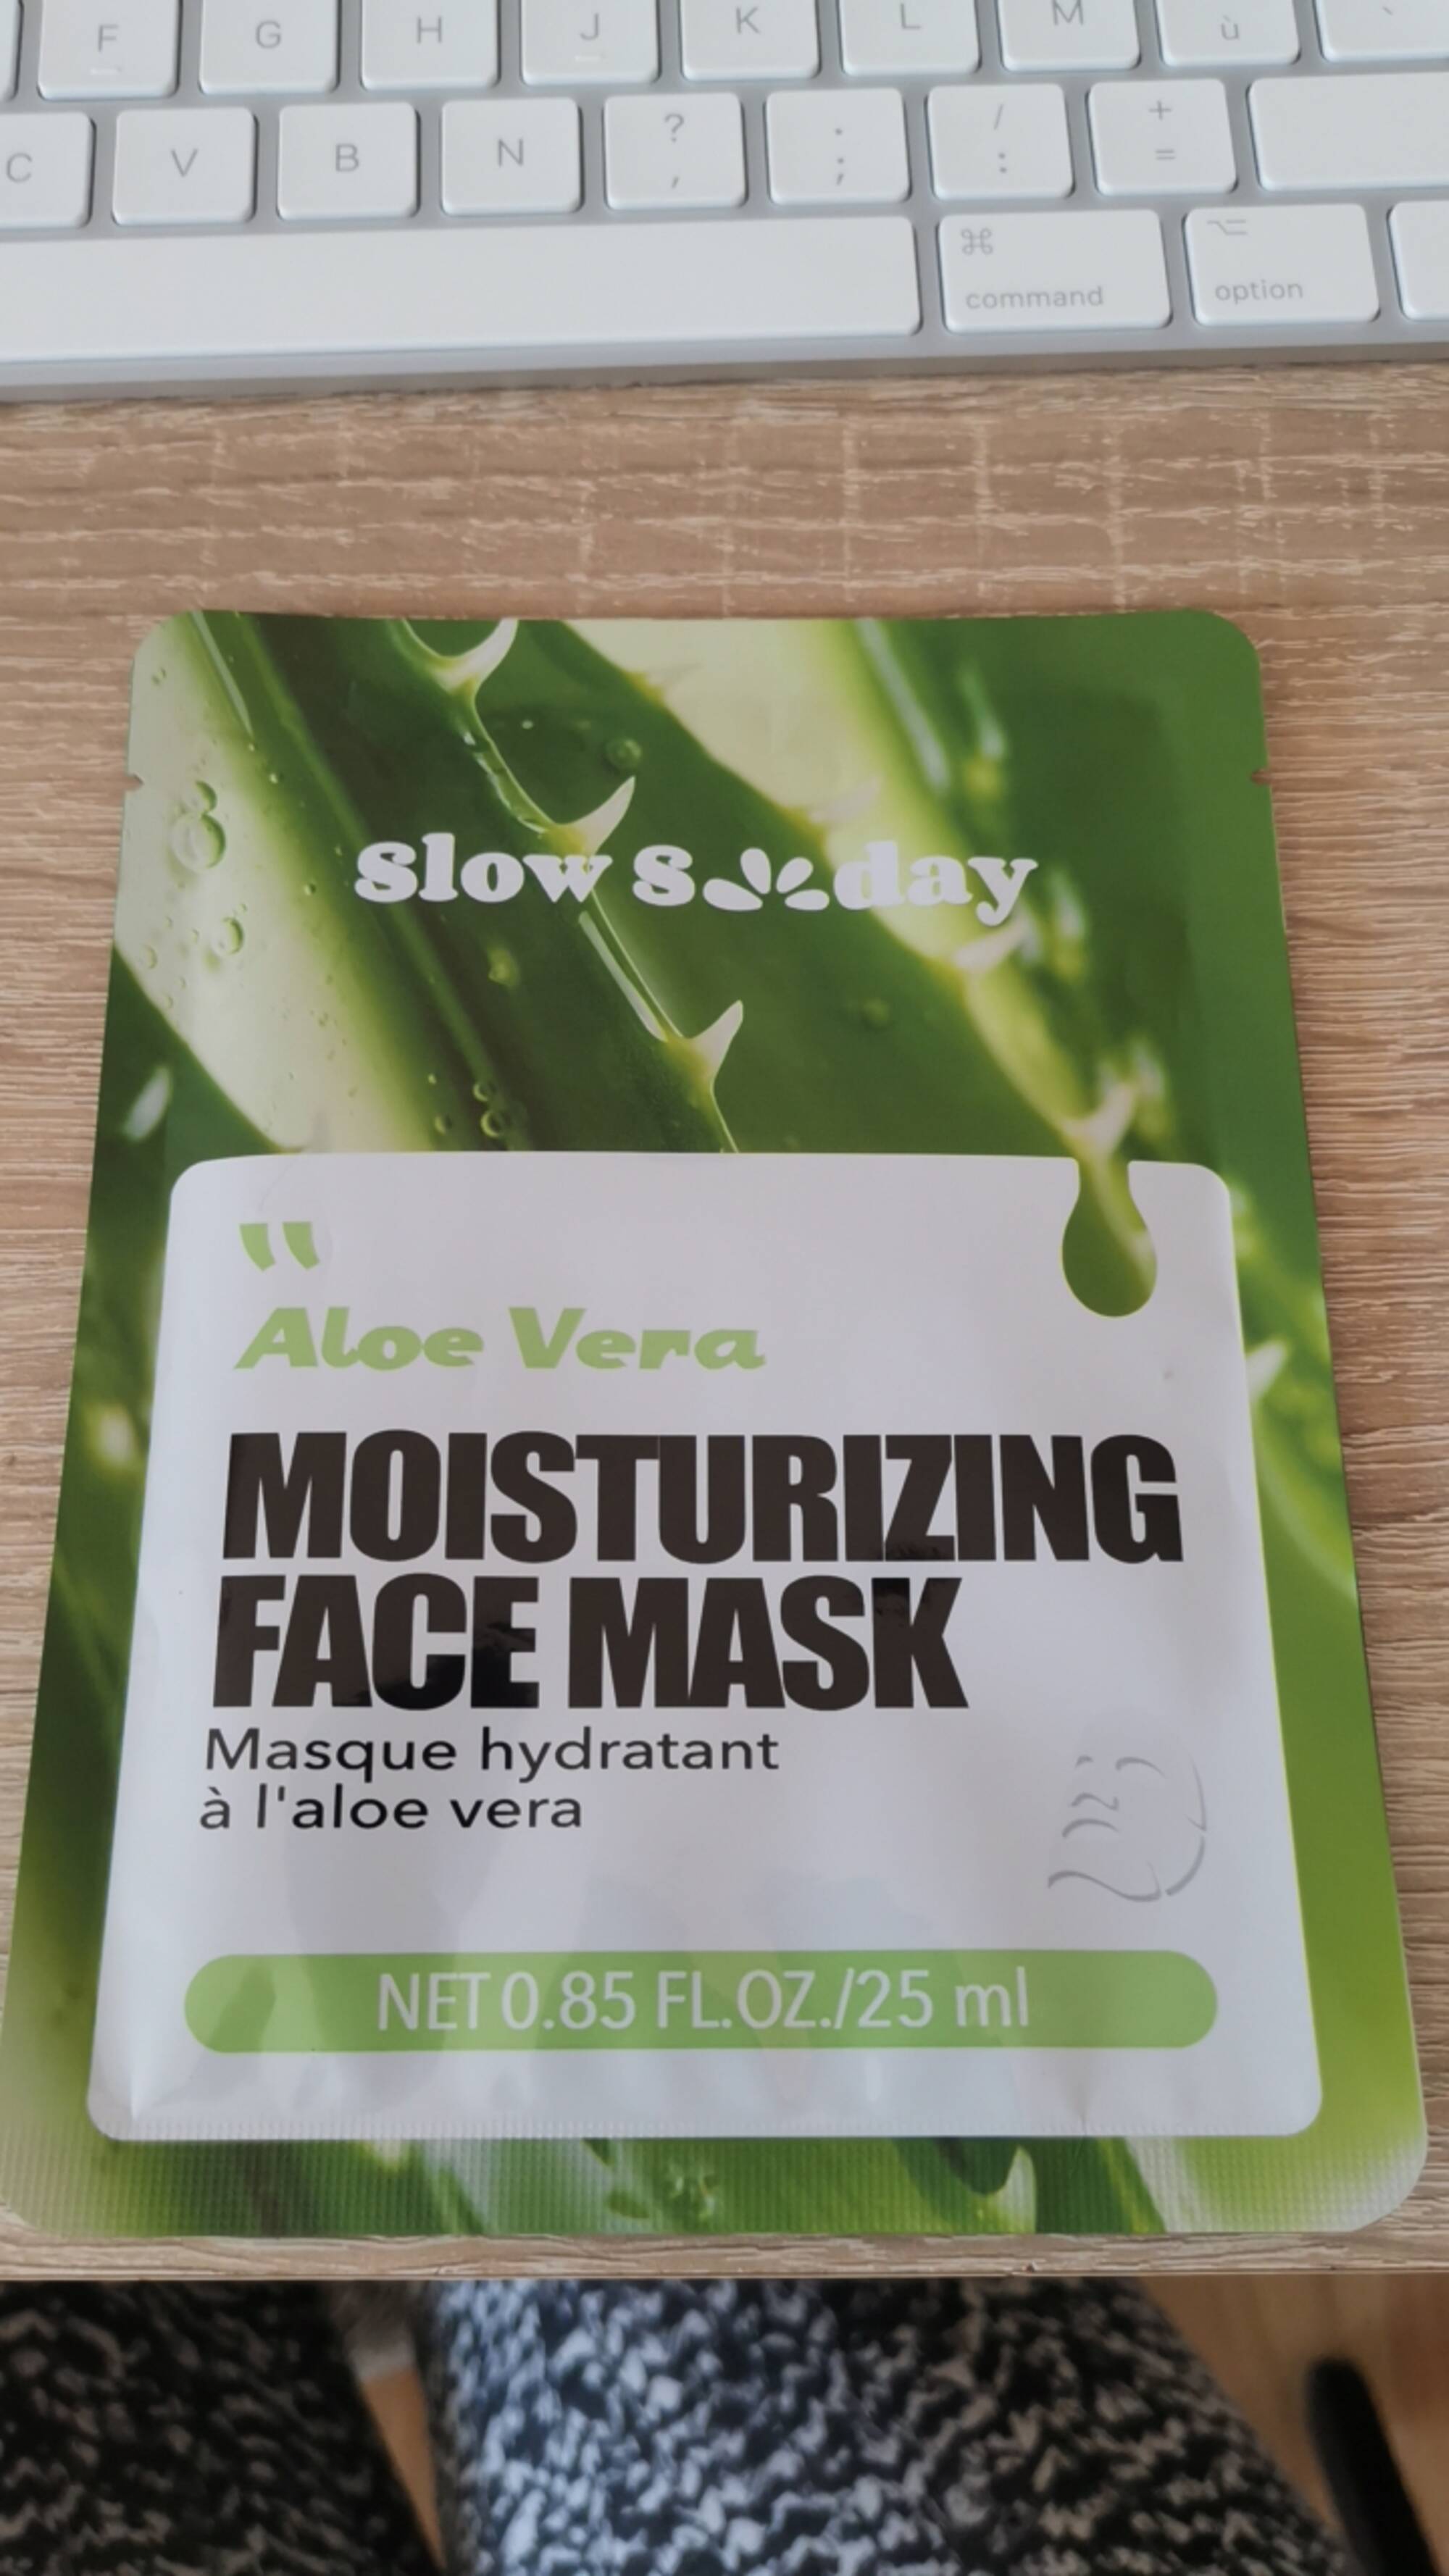 SLOW SUNDAY - Moisturizing face mask 